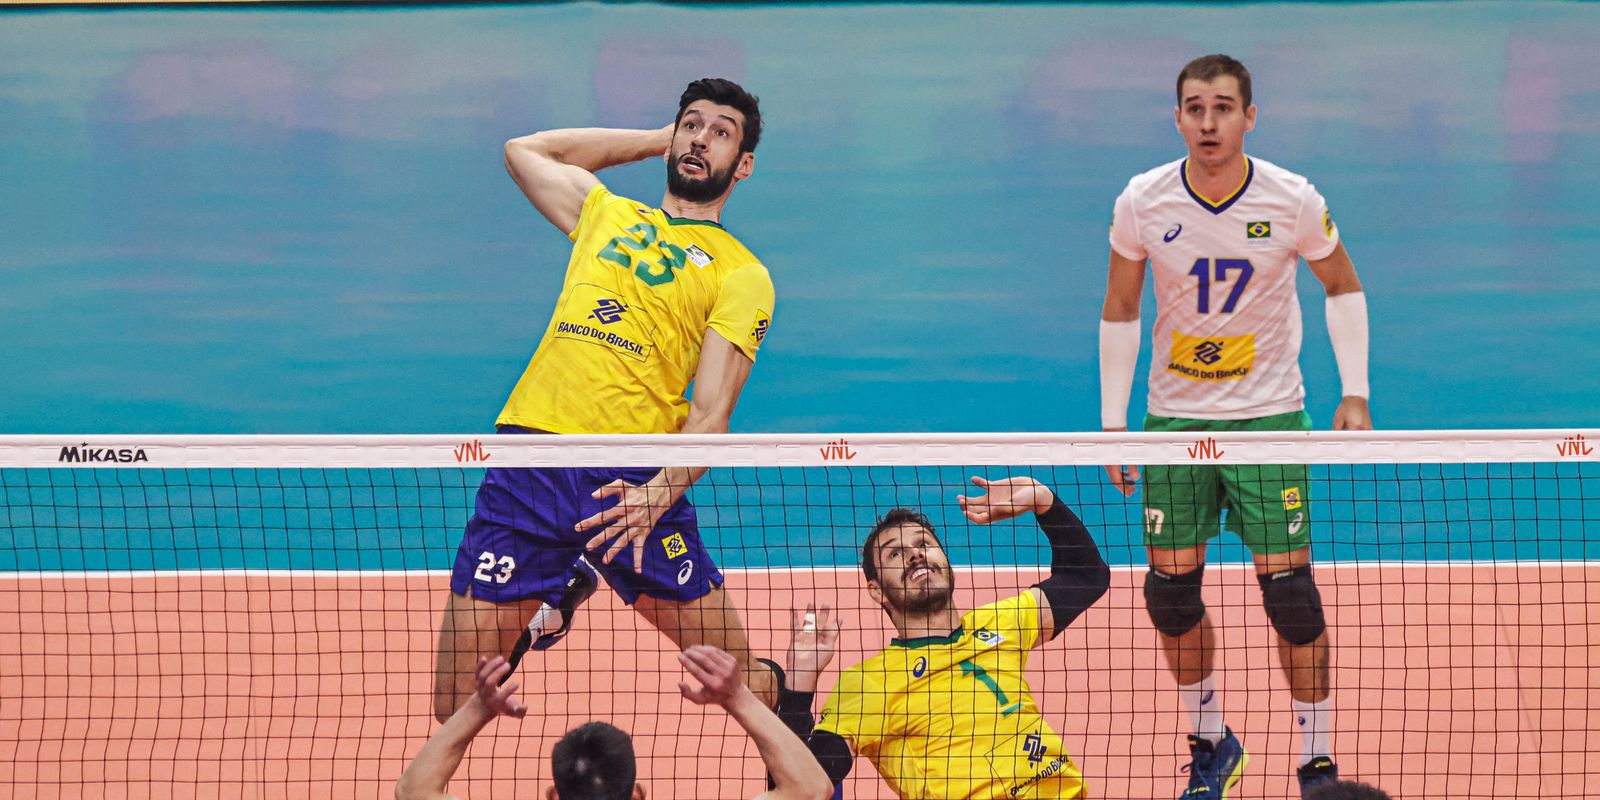 Volley : le Brésil s’incline face à la Chine en Ligue des Nations à Brasilia